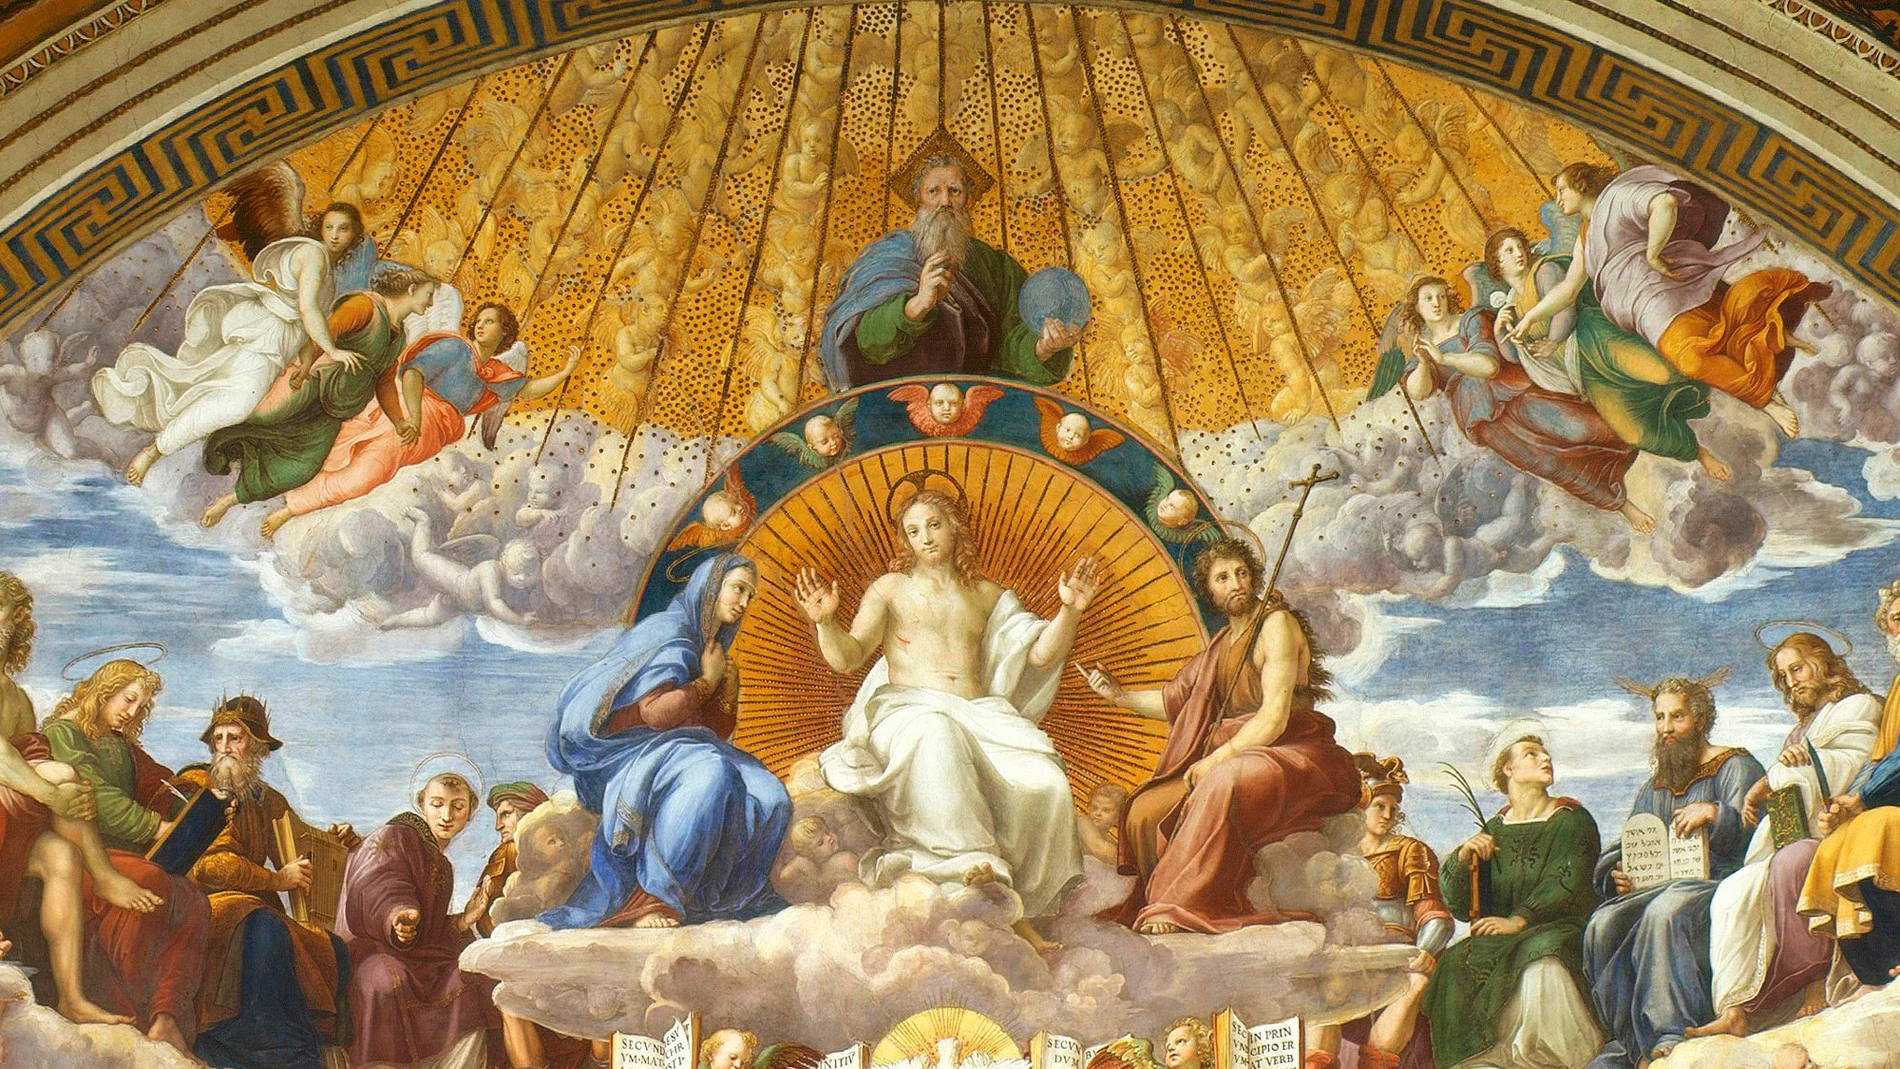 Fresco de Rafael Sanzio, "La disputa sobre el Santo Sacramento", capilla de la Signatura Apostólica del Vaticano